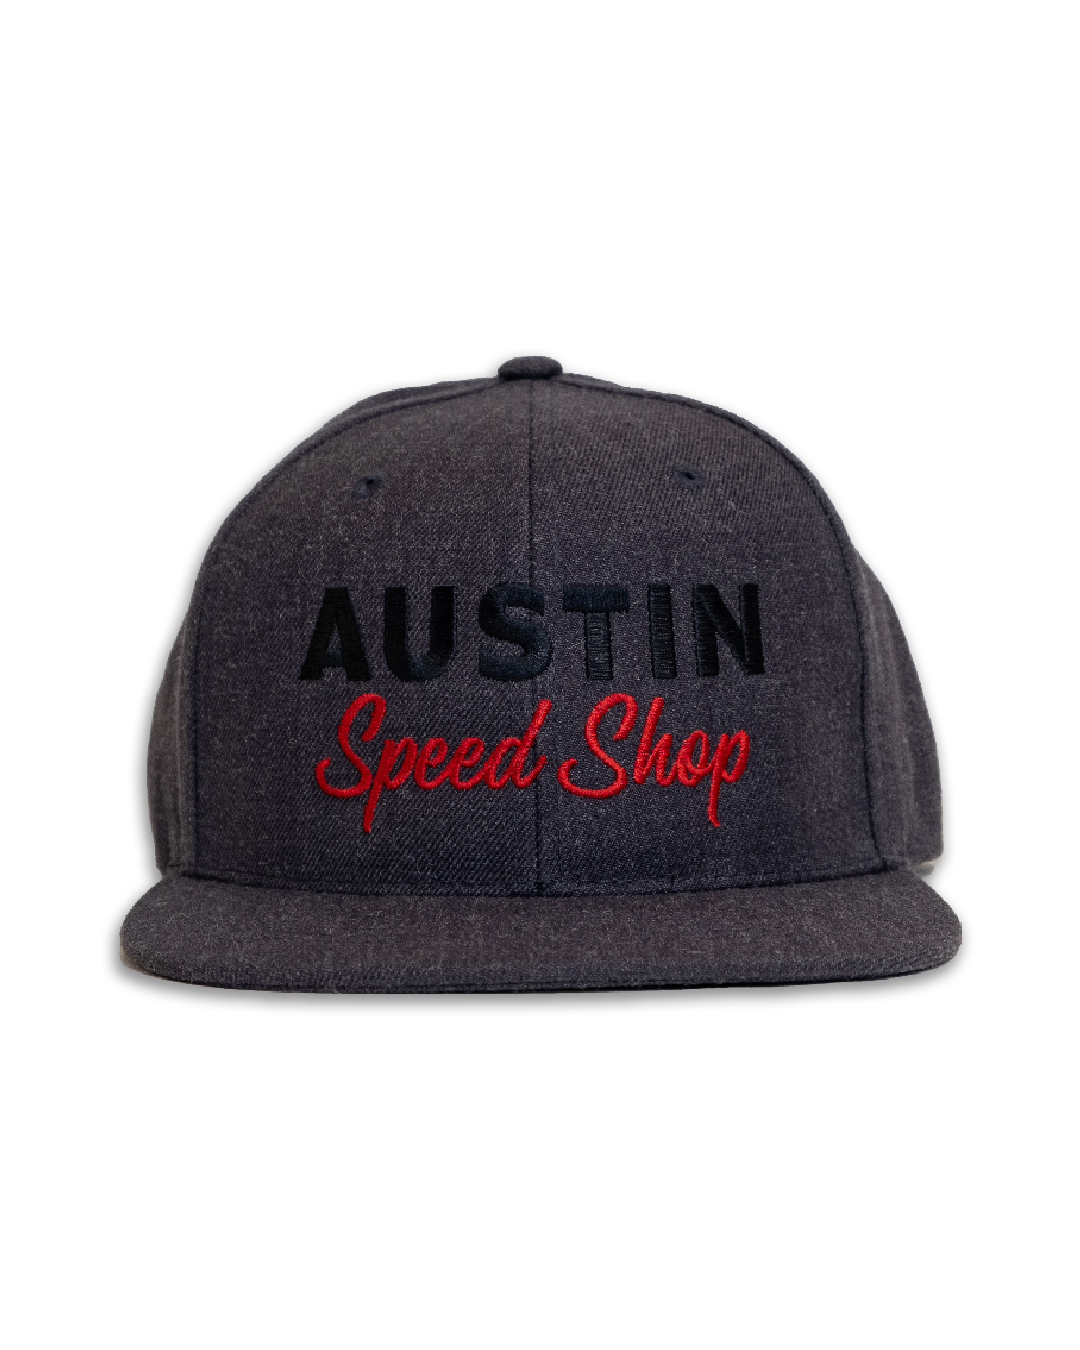 Gray Speed Logo Hat - Austin Speed Shop